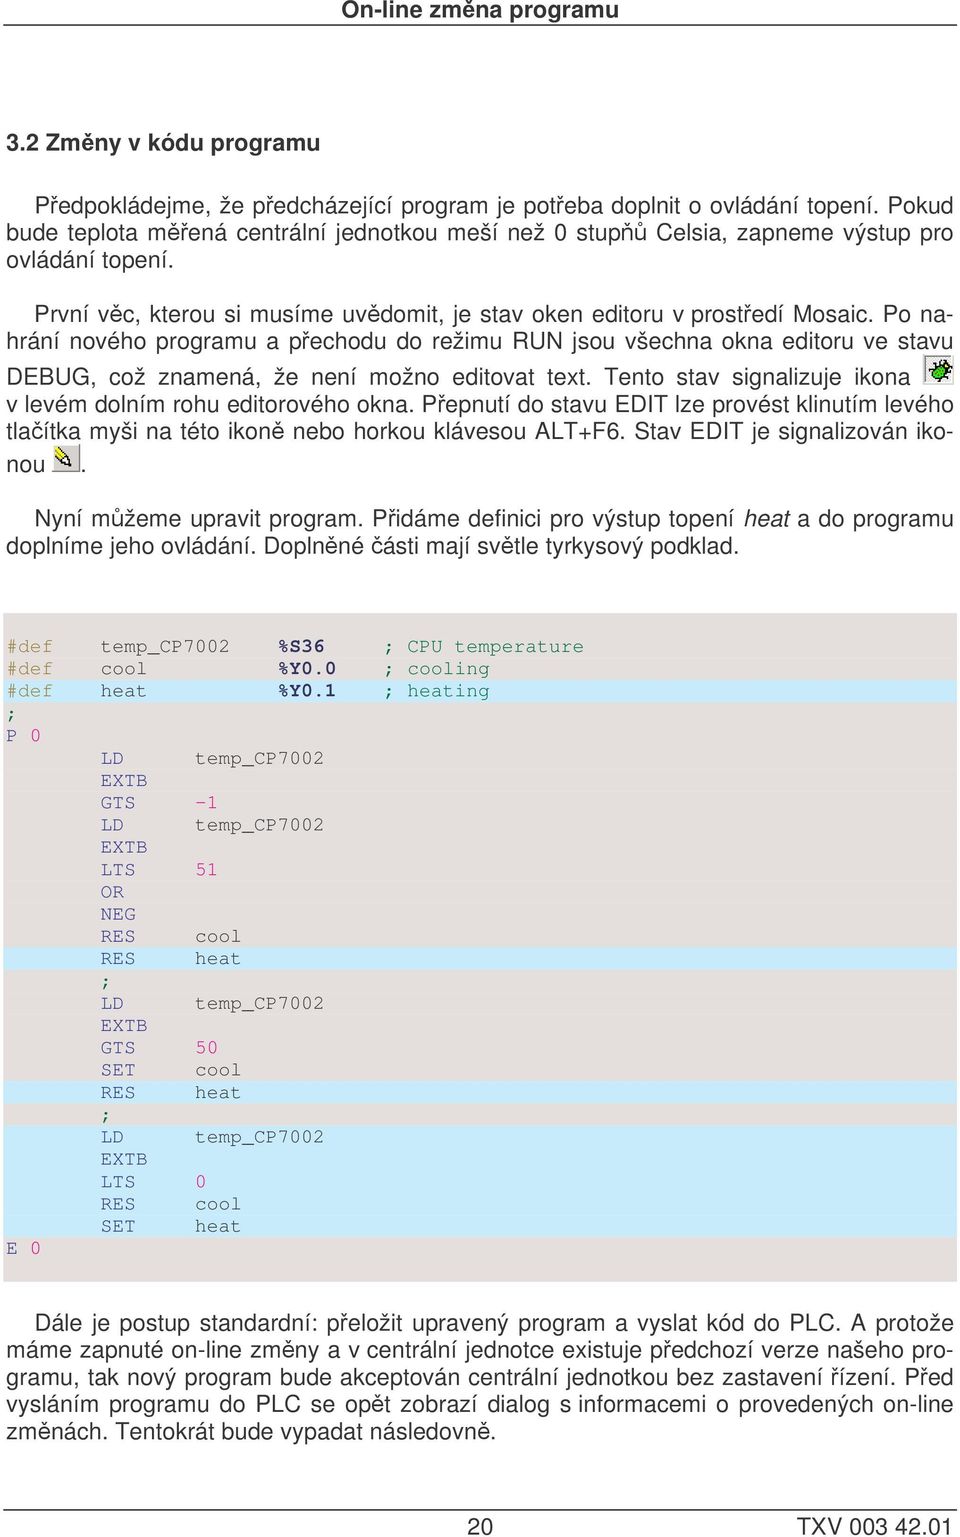 Po nahrání nového programu a pechodu do režimu RUN jsou všechna okna editoru ve stavu DEBUG, což znamená, že není možno editovat text.